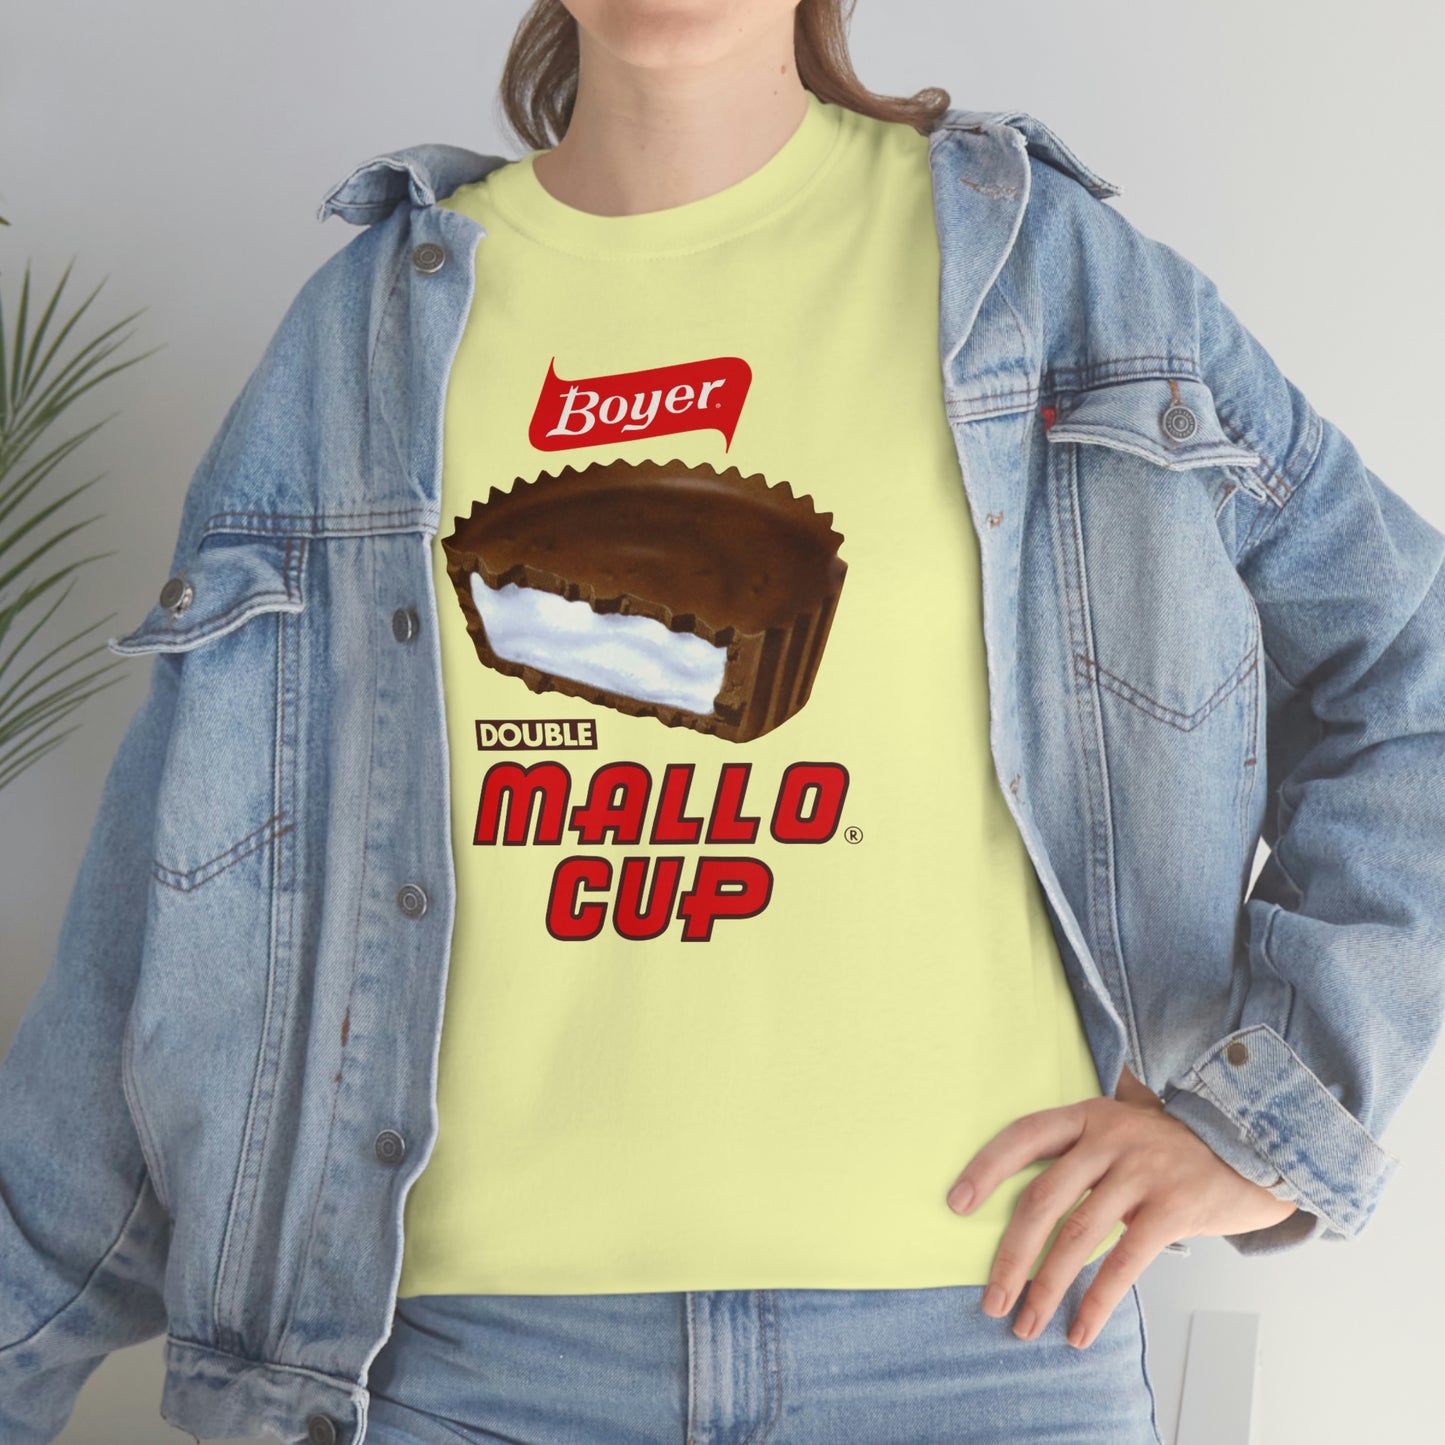 Mallocups T-Shirt